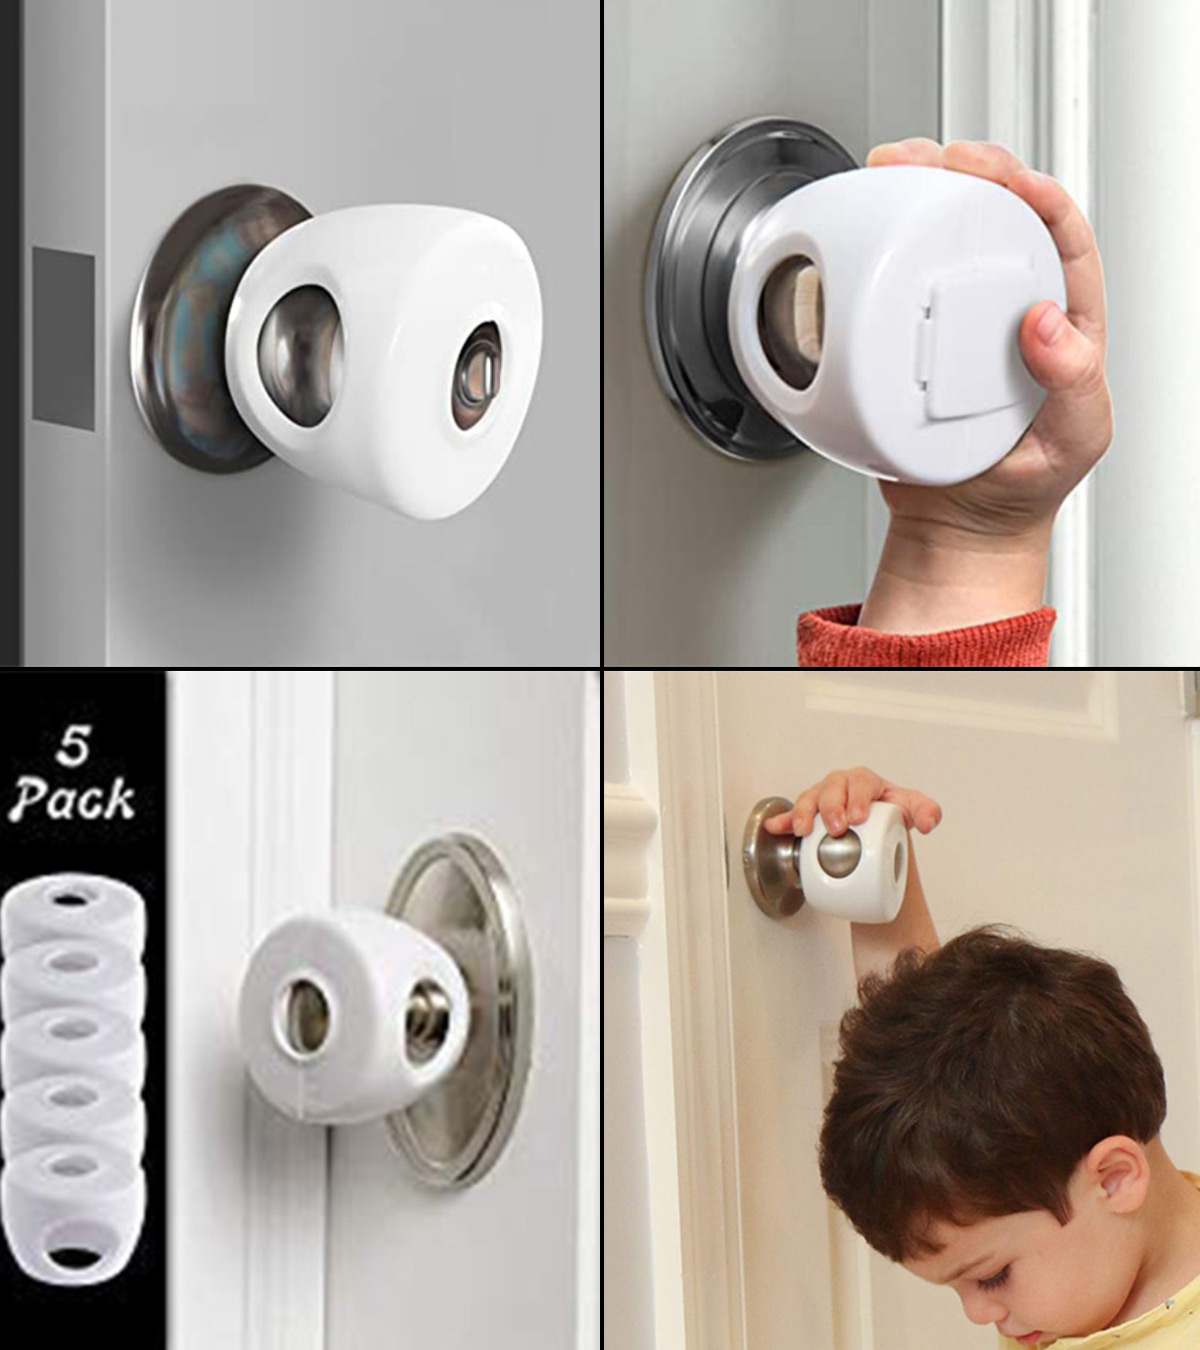 door protection,child safety door cover,Door Slam,1 Pack 1 Pack GIFT 